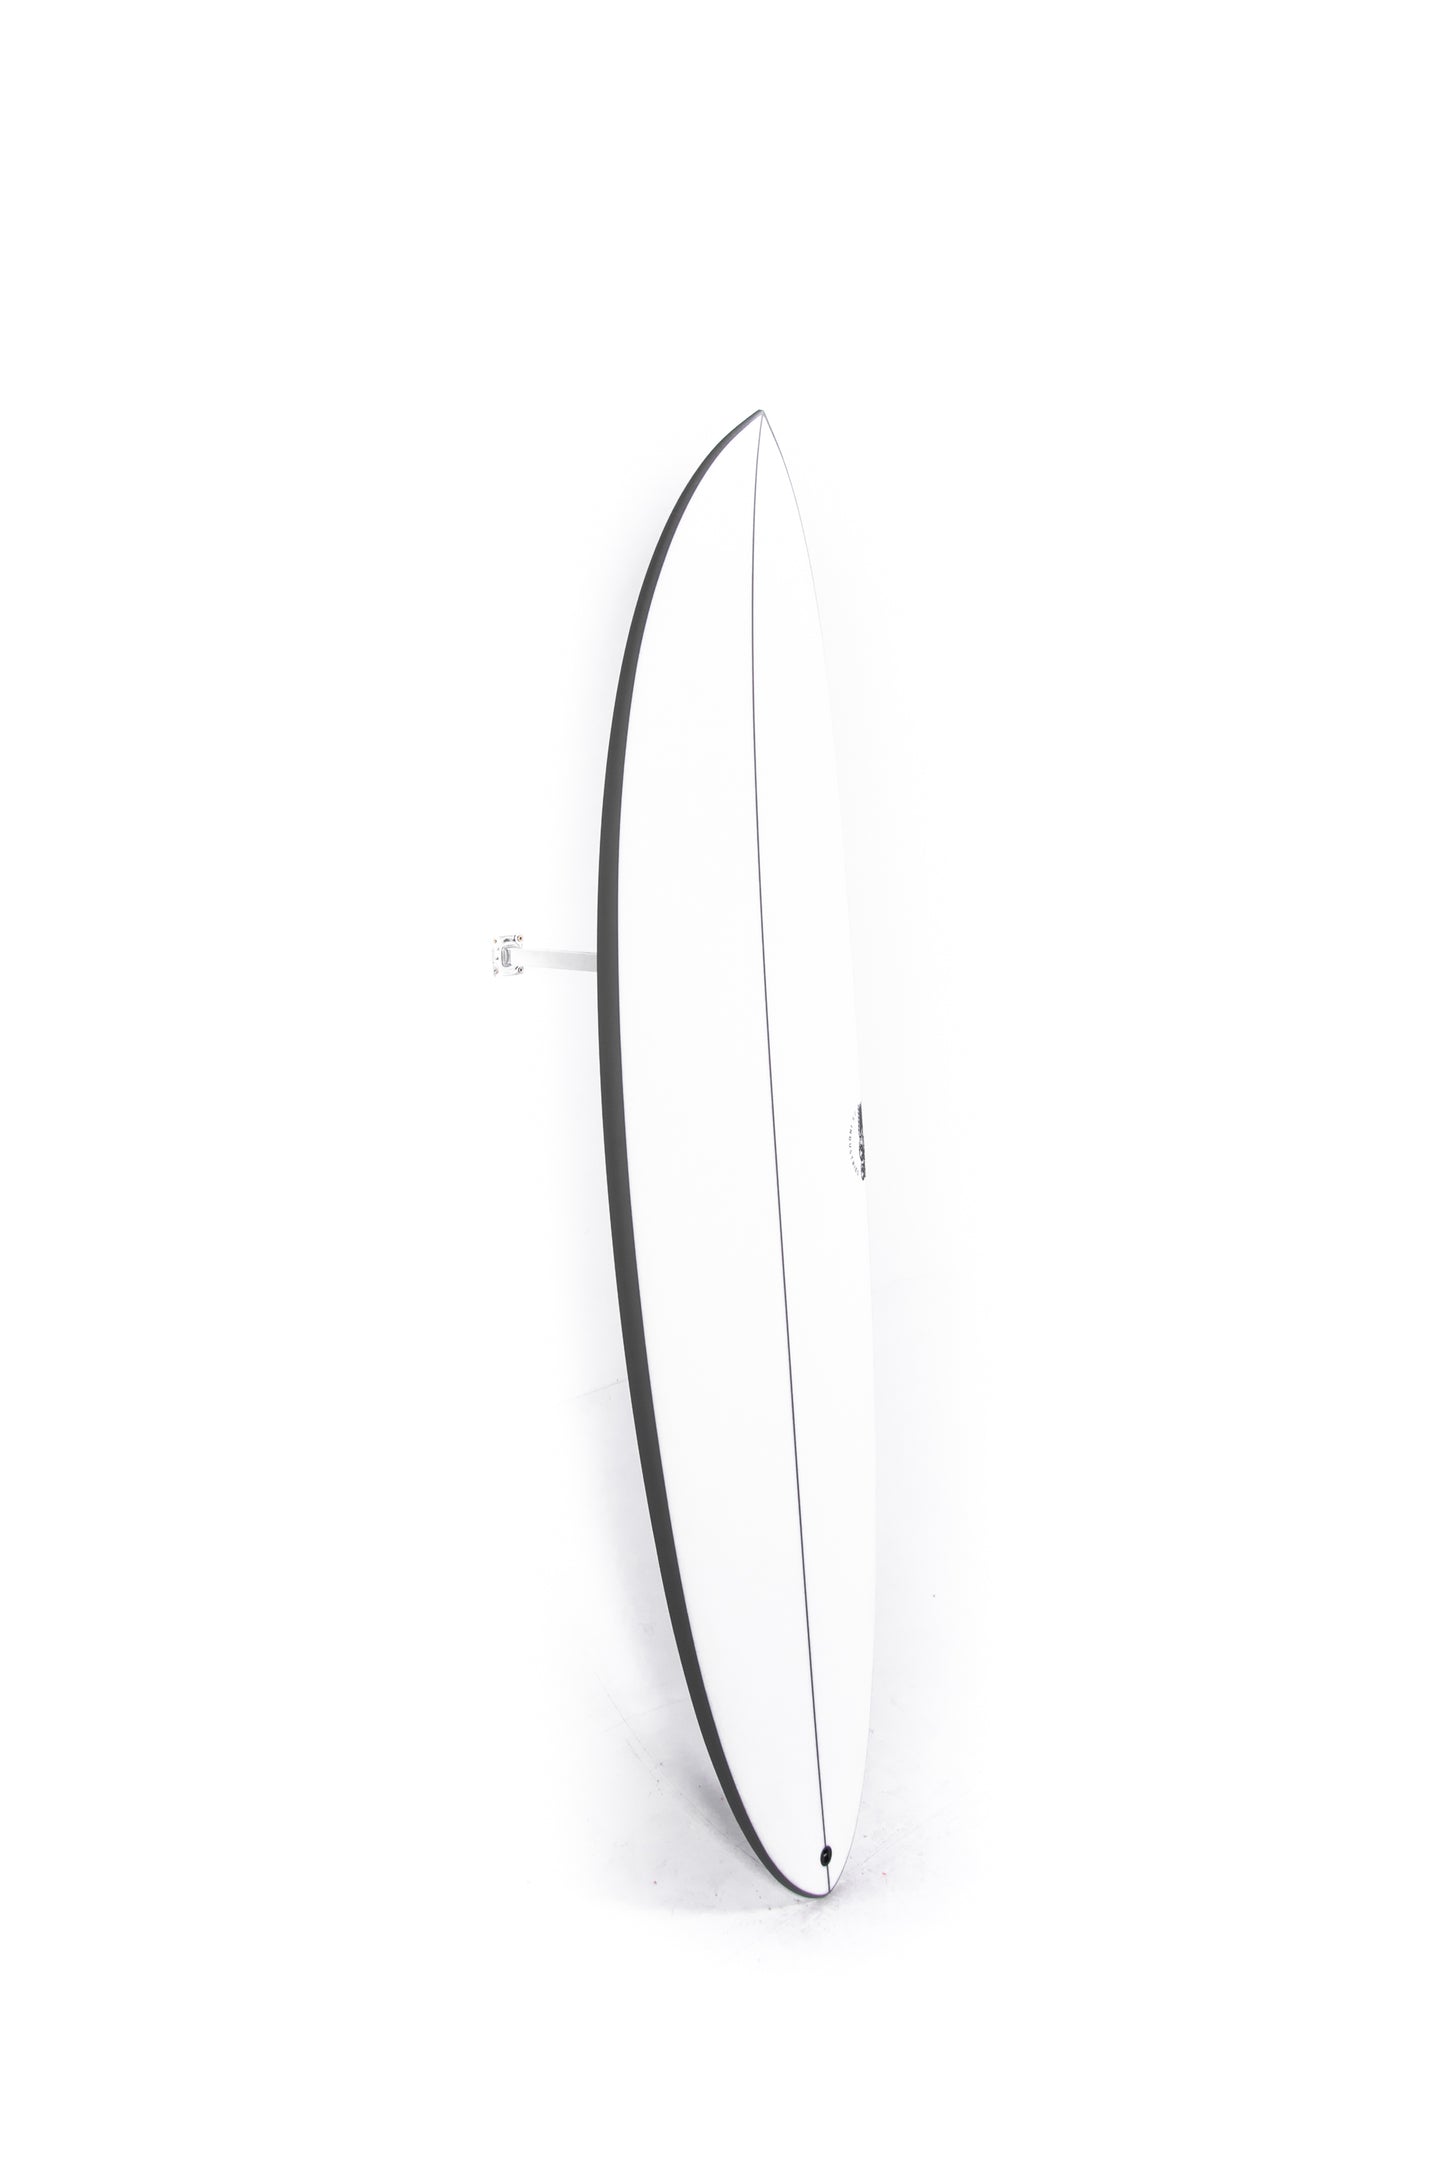 
                  
                    Pukas Surf Shop - JS Surfboards - EL BARON - 6'6" x 20 x 2 9/16 x 37L. - JPEB66
                  
                